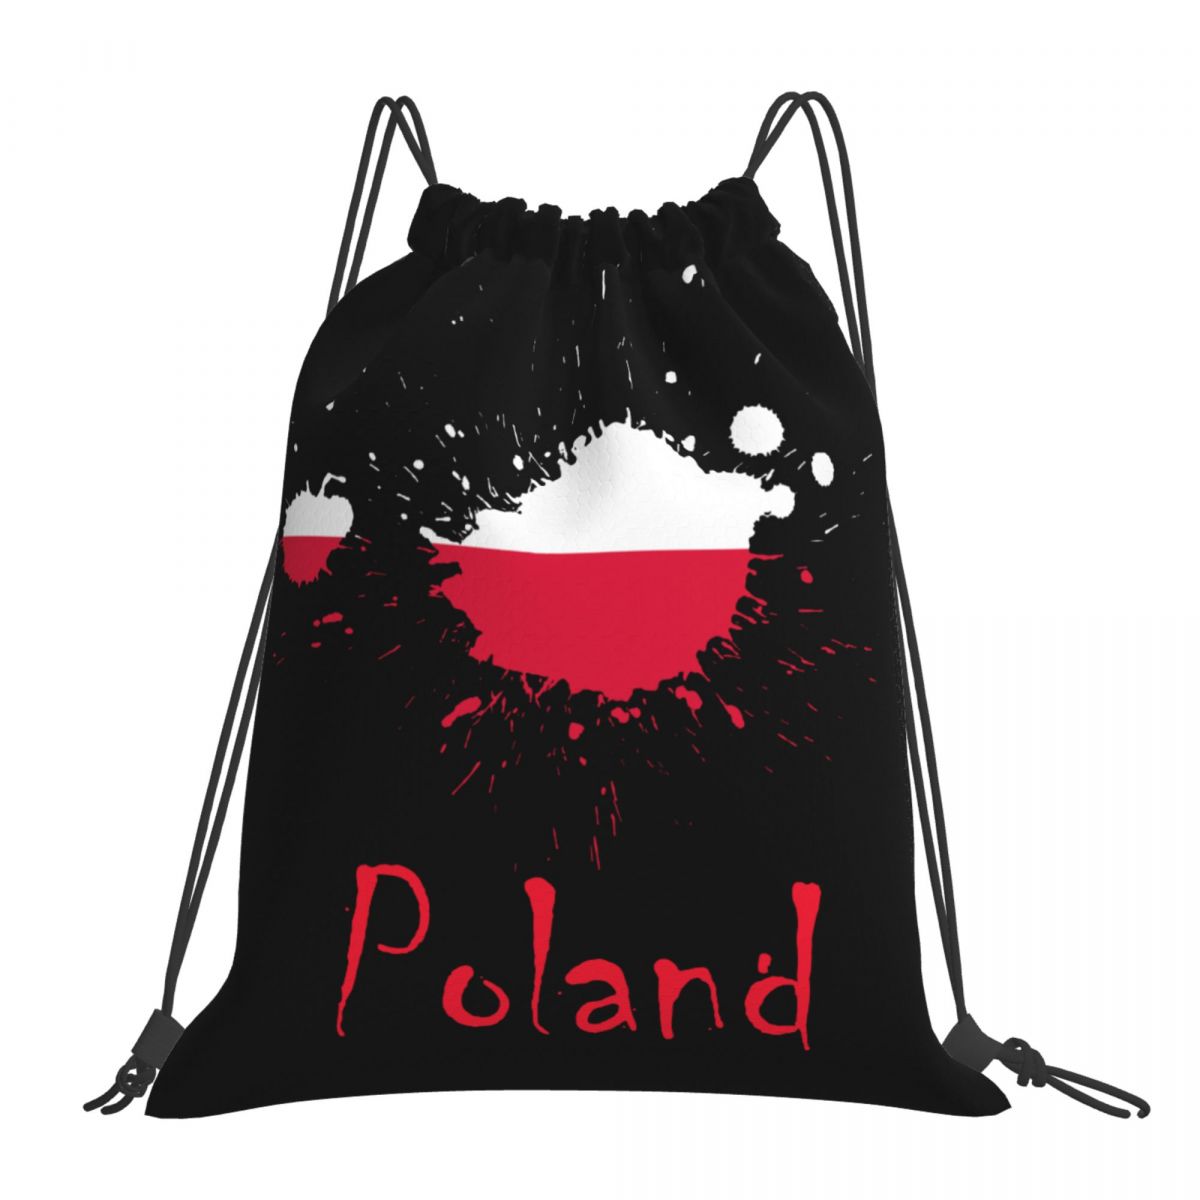 Poland Ink Spatter Unisex Drawstring Backpack Bag Travel Sackpack